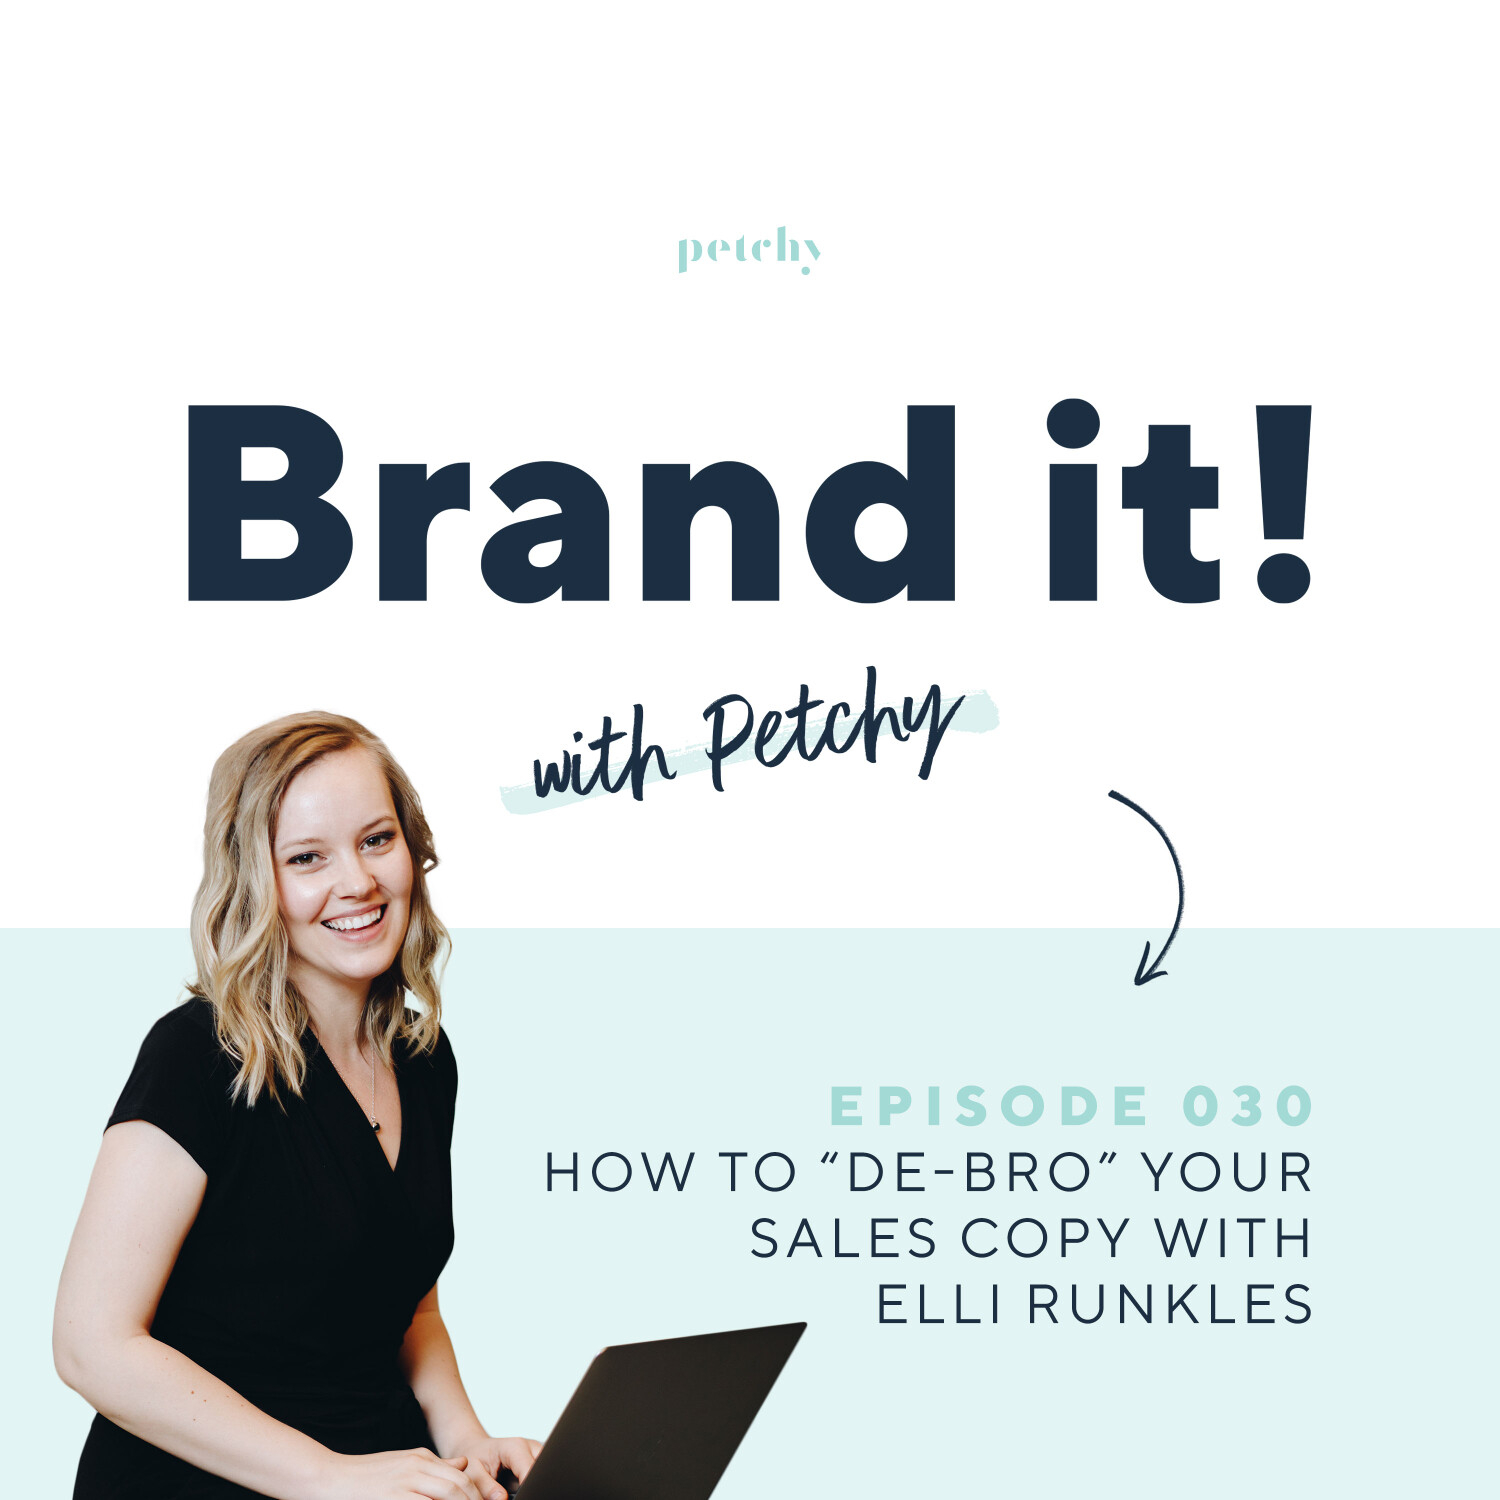 How to ”de-bro” your sales copy w/ Elli Runkles